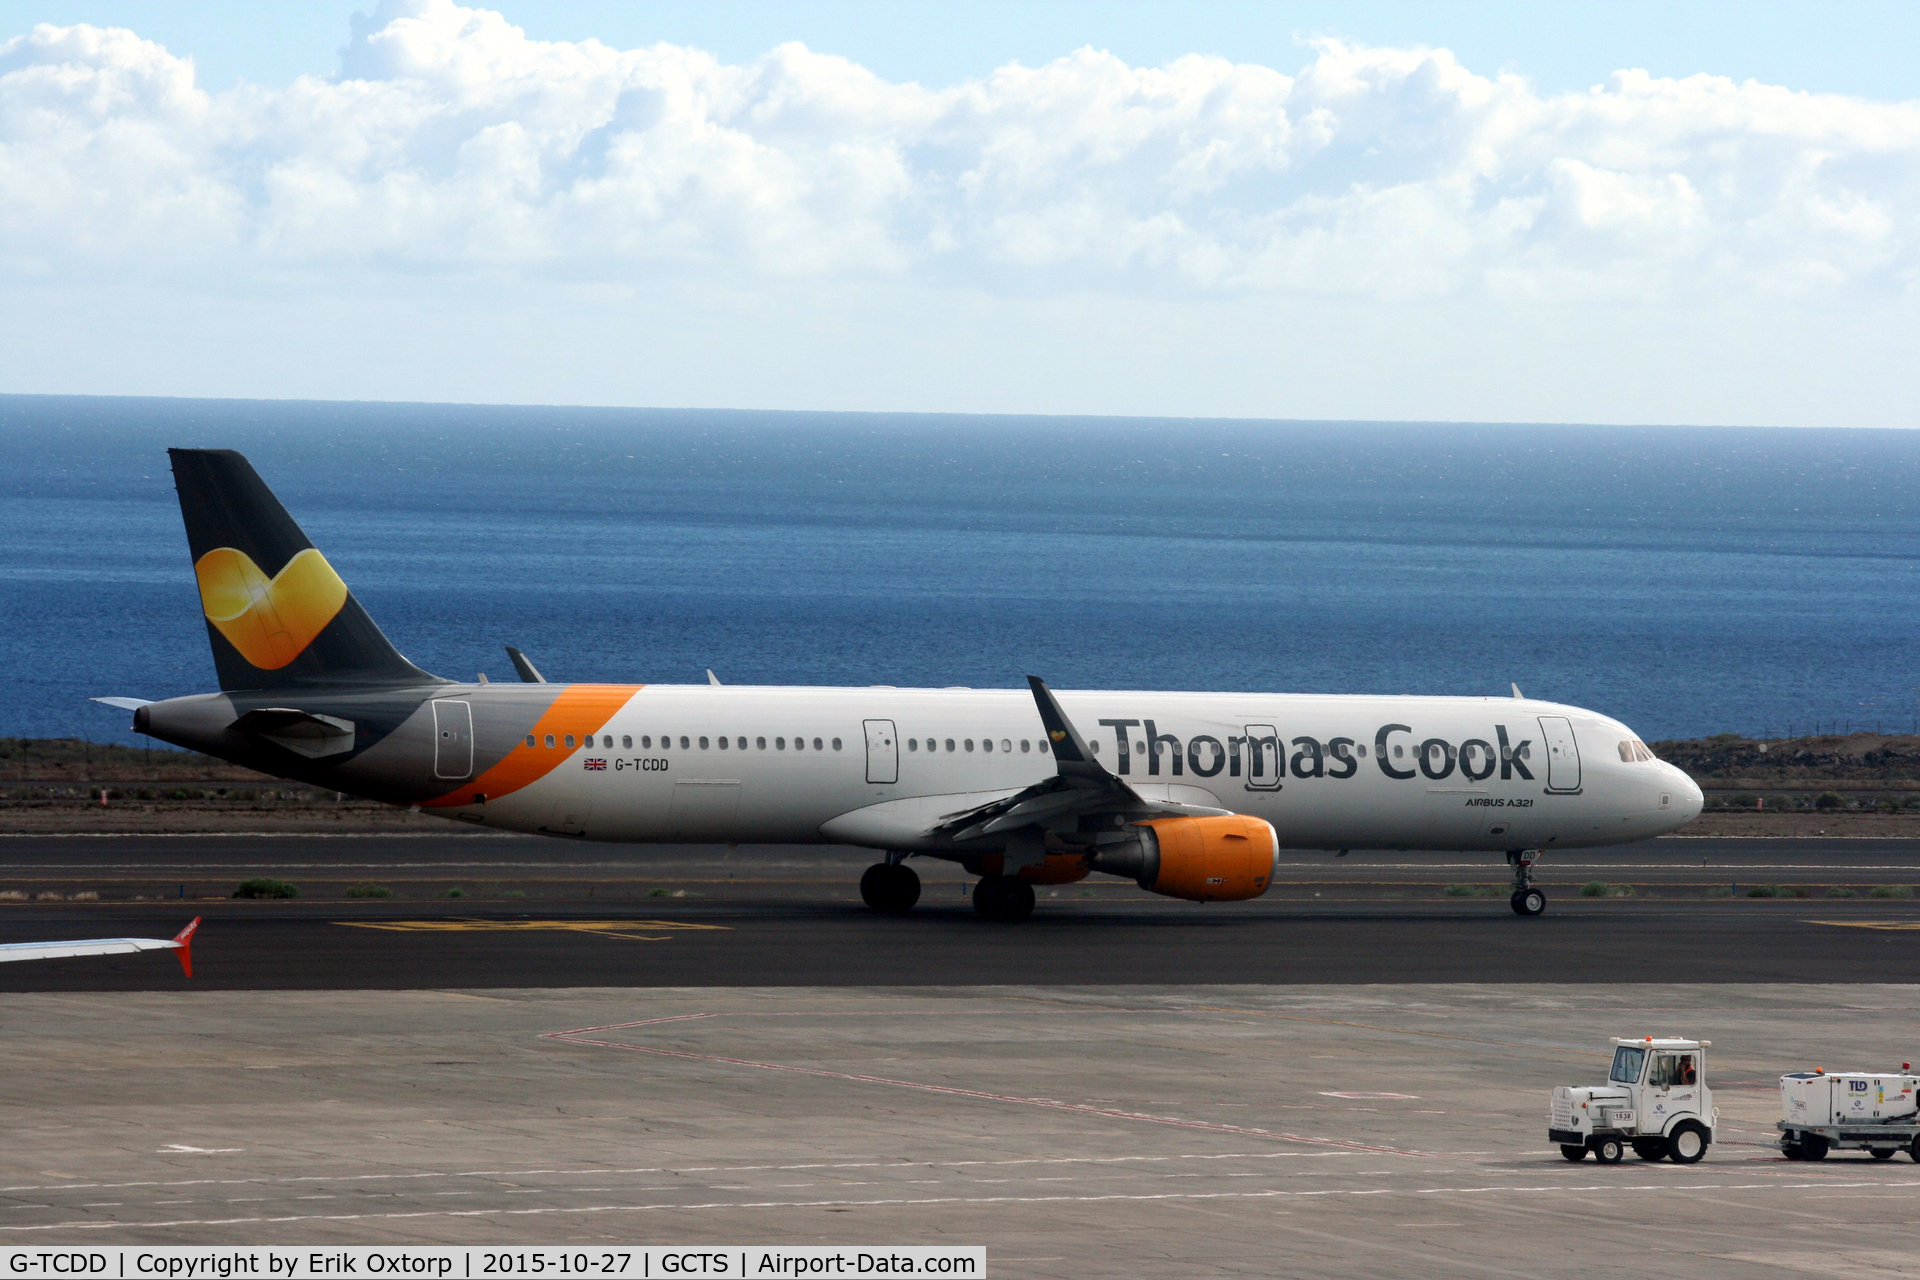 G-TCDD, 2014 Airbus A321-211 C/N 6038, G-TCDD in TFS